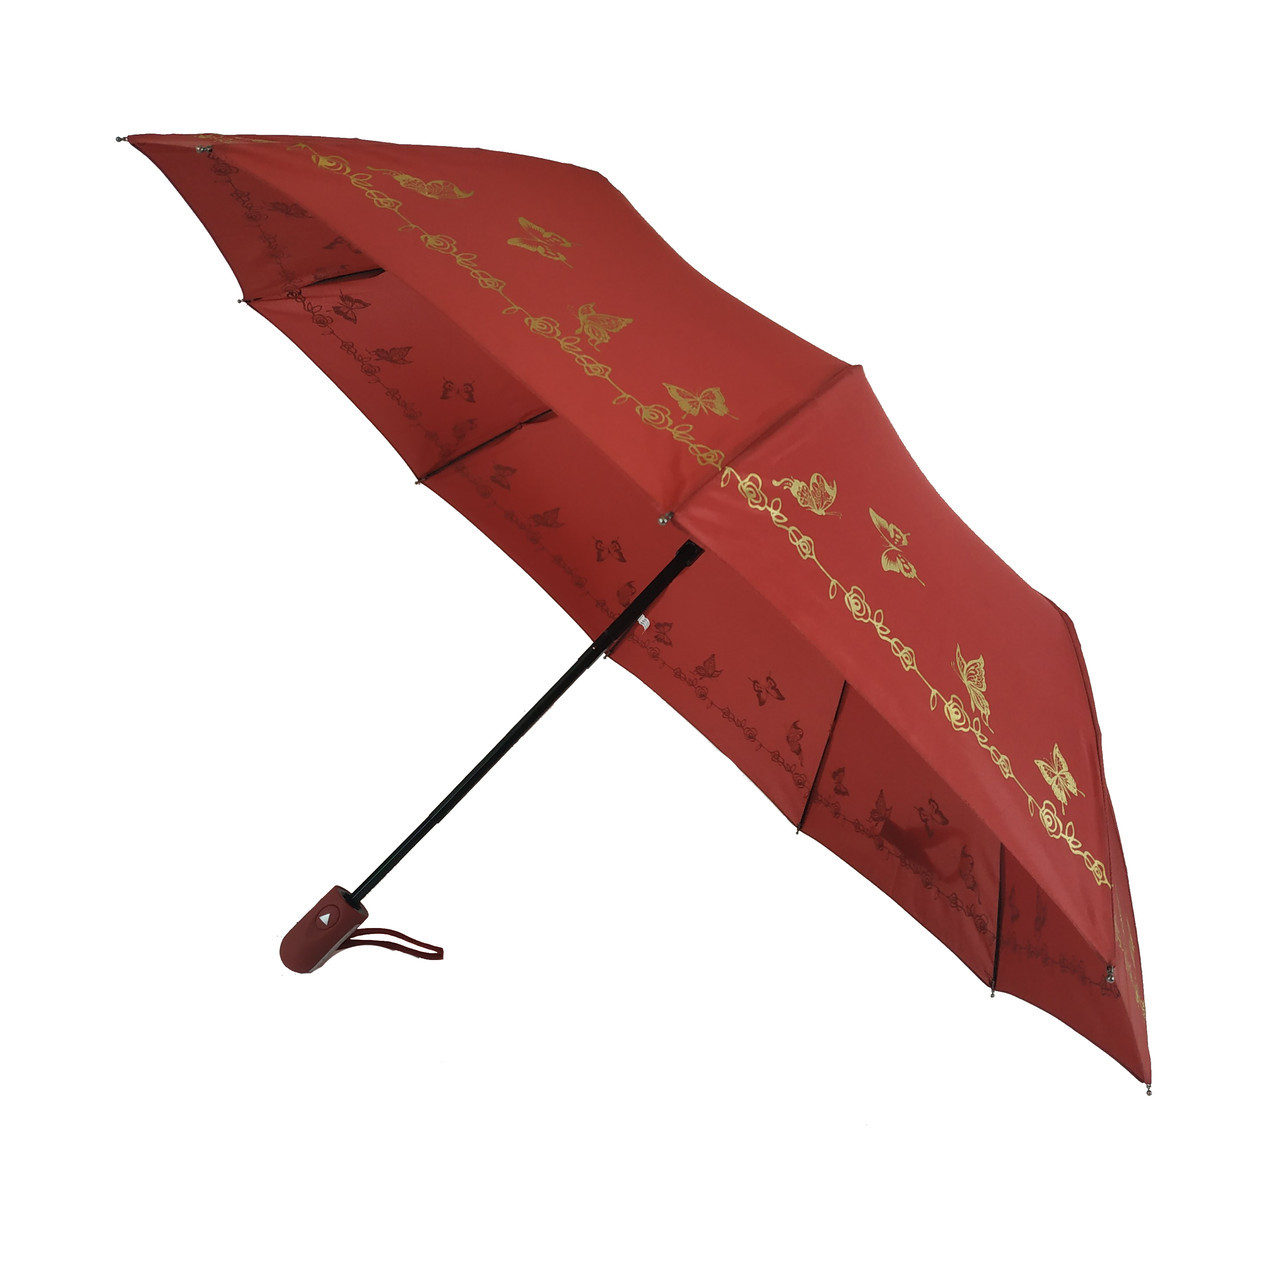 Жіноча парасоля напівавтомат Bellissimo з золотистим візерунком на куполі на 10 спиць, бордовий, 018308-8